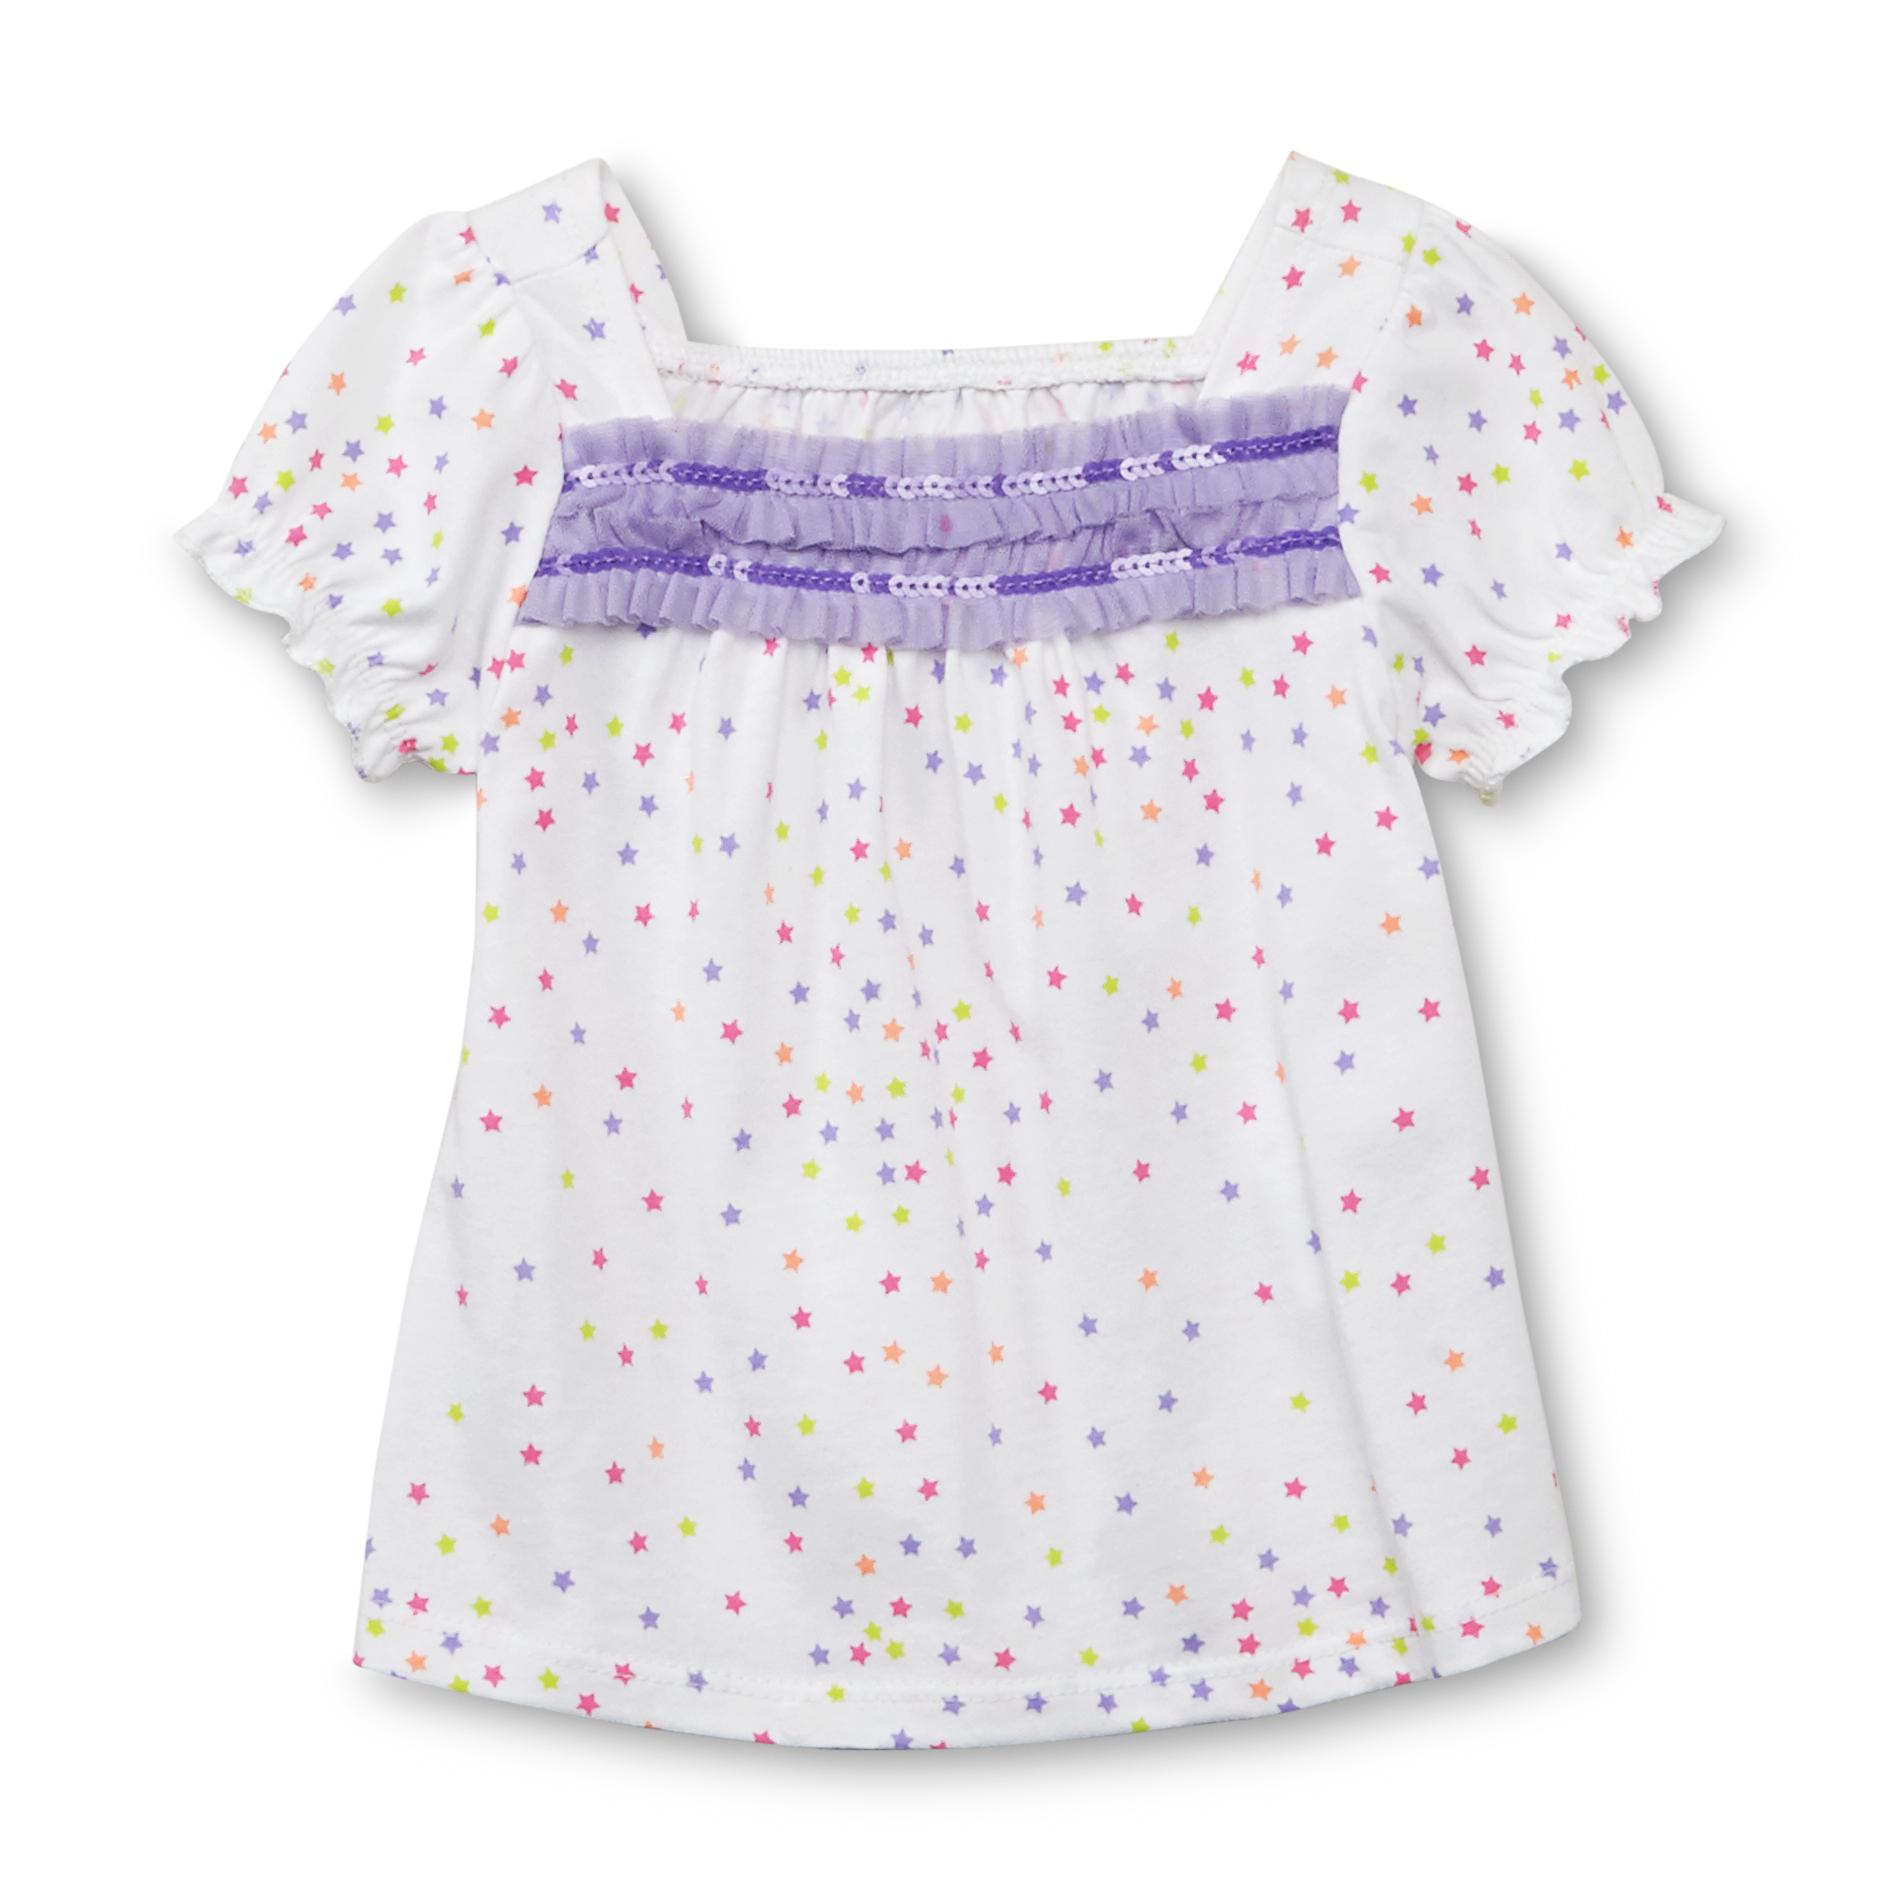 WonderKids Infant & Toddler Girl's Embellished Short-Sleeve Top - Stars